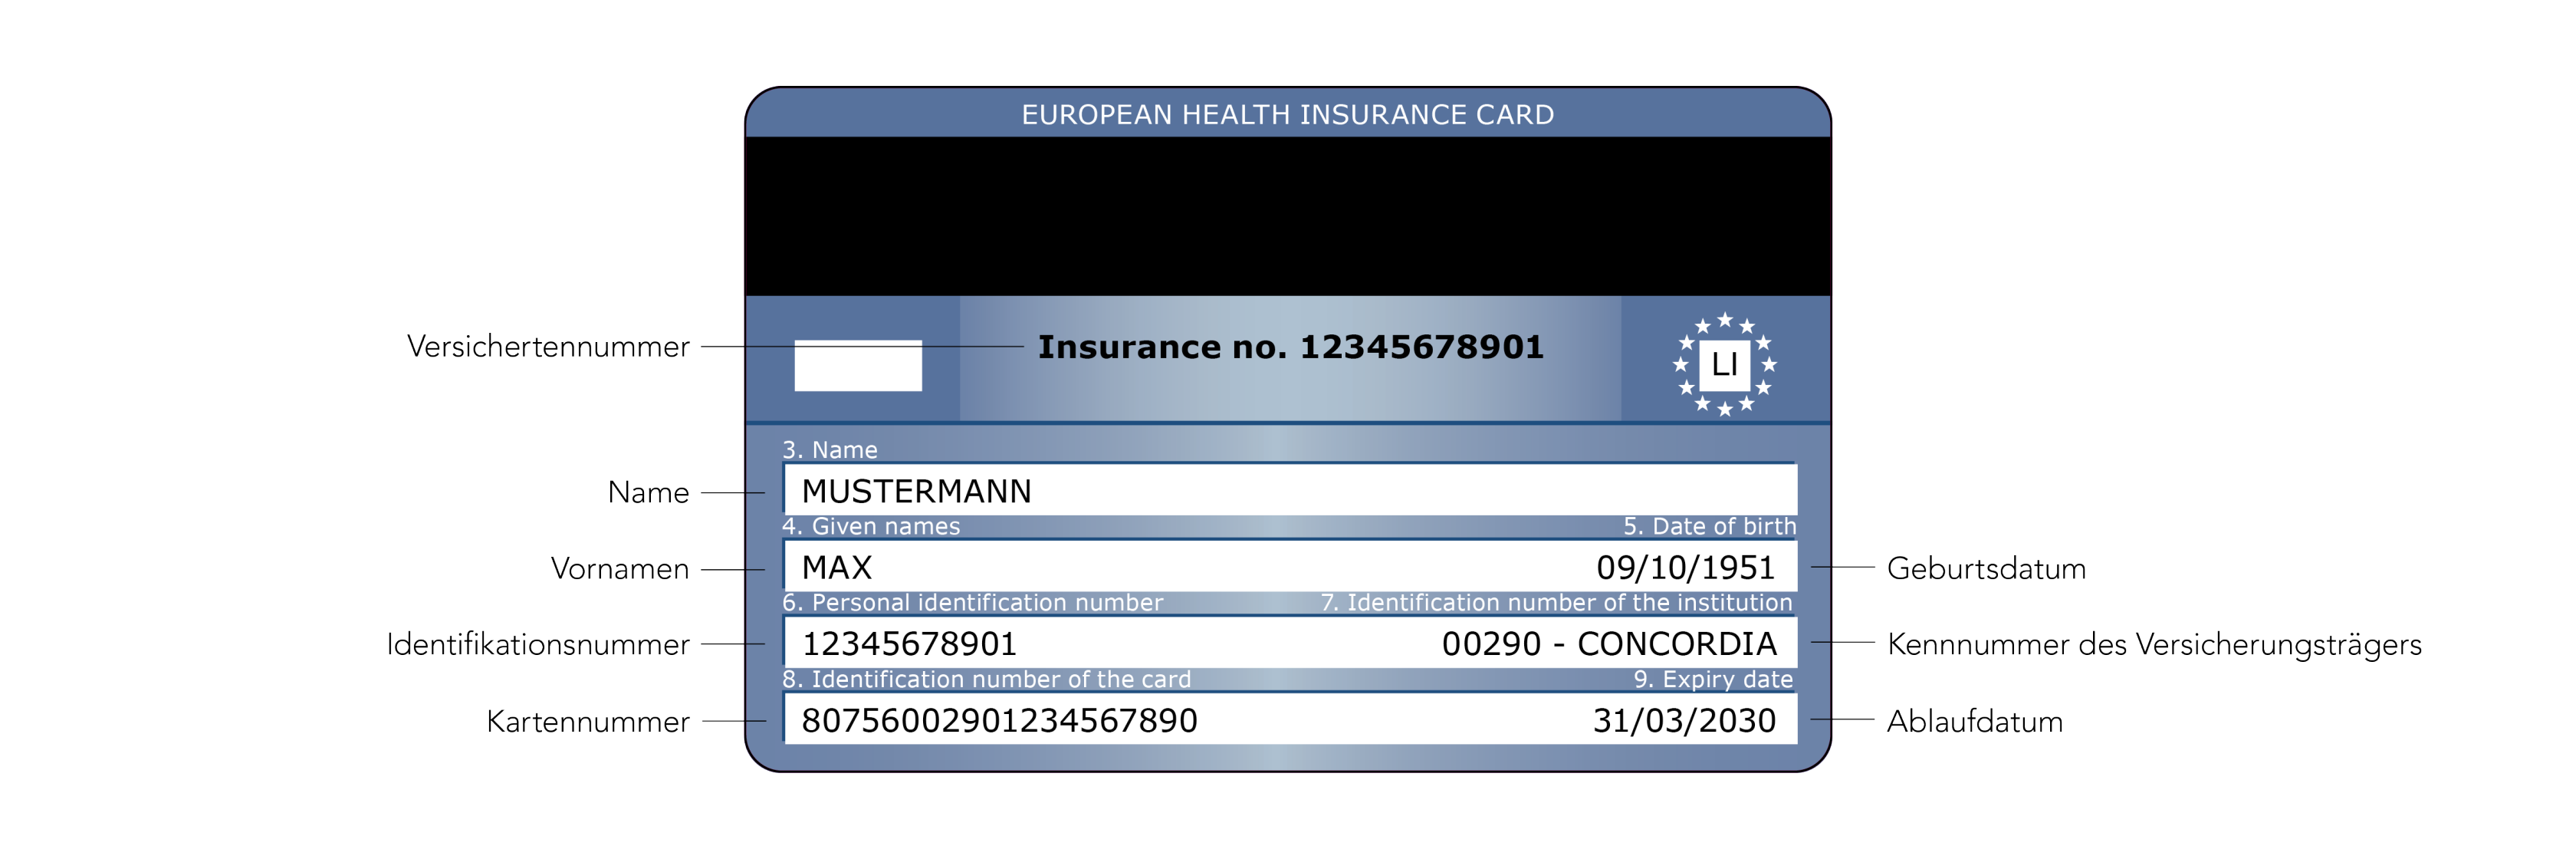 Europäische Krankenversicherungskarte